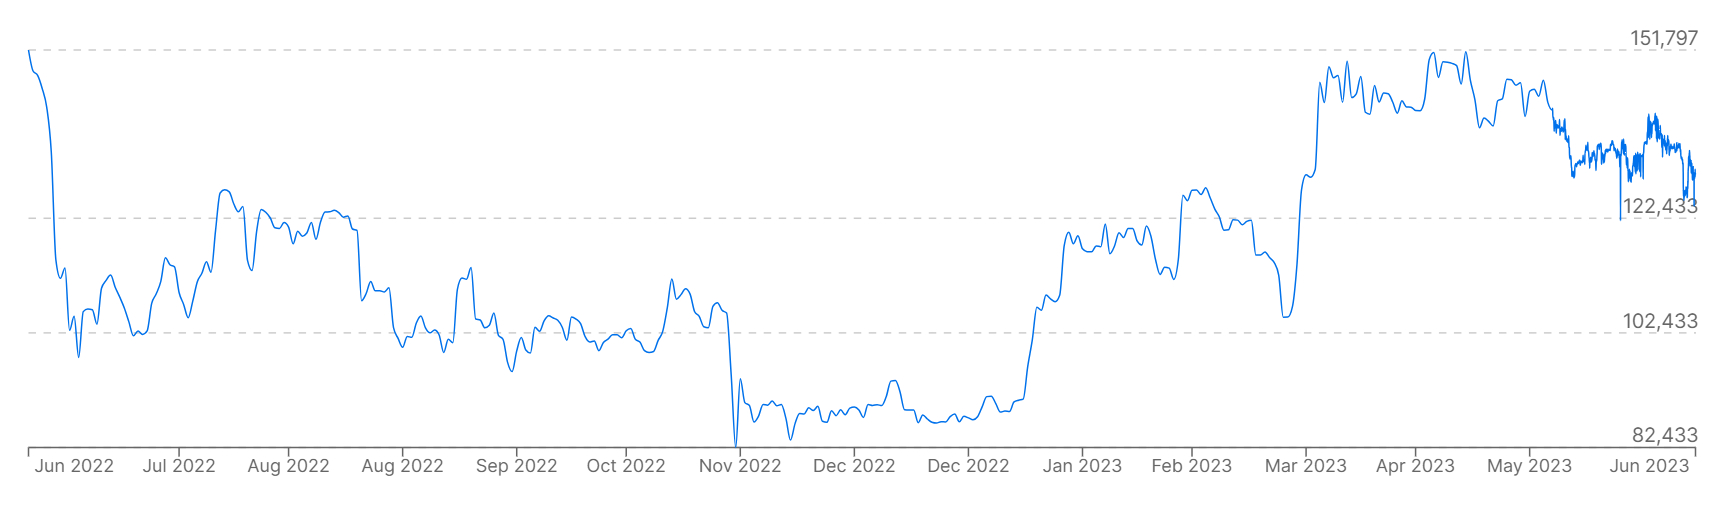 نموداری که قیمت بیت کوین را در مقابل فیات BRL در سال گذشته نشان می دهد.